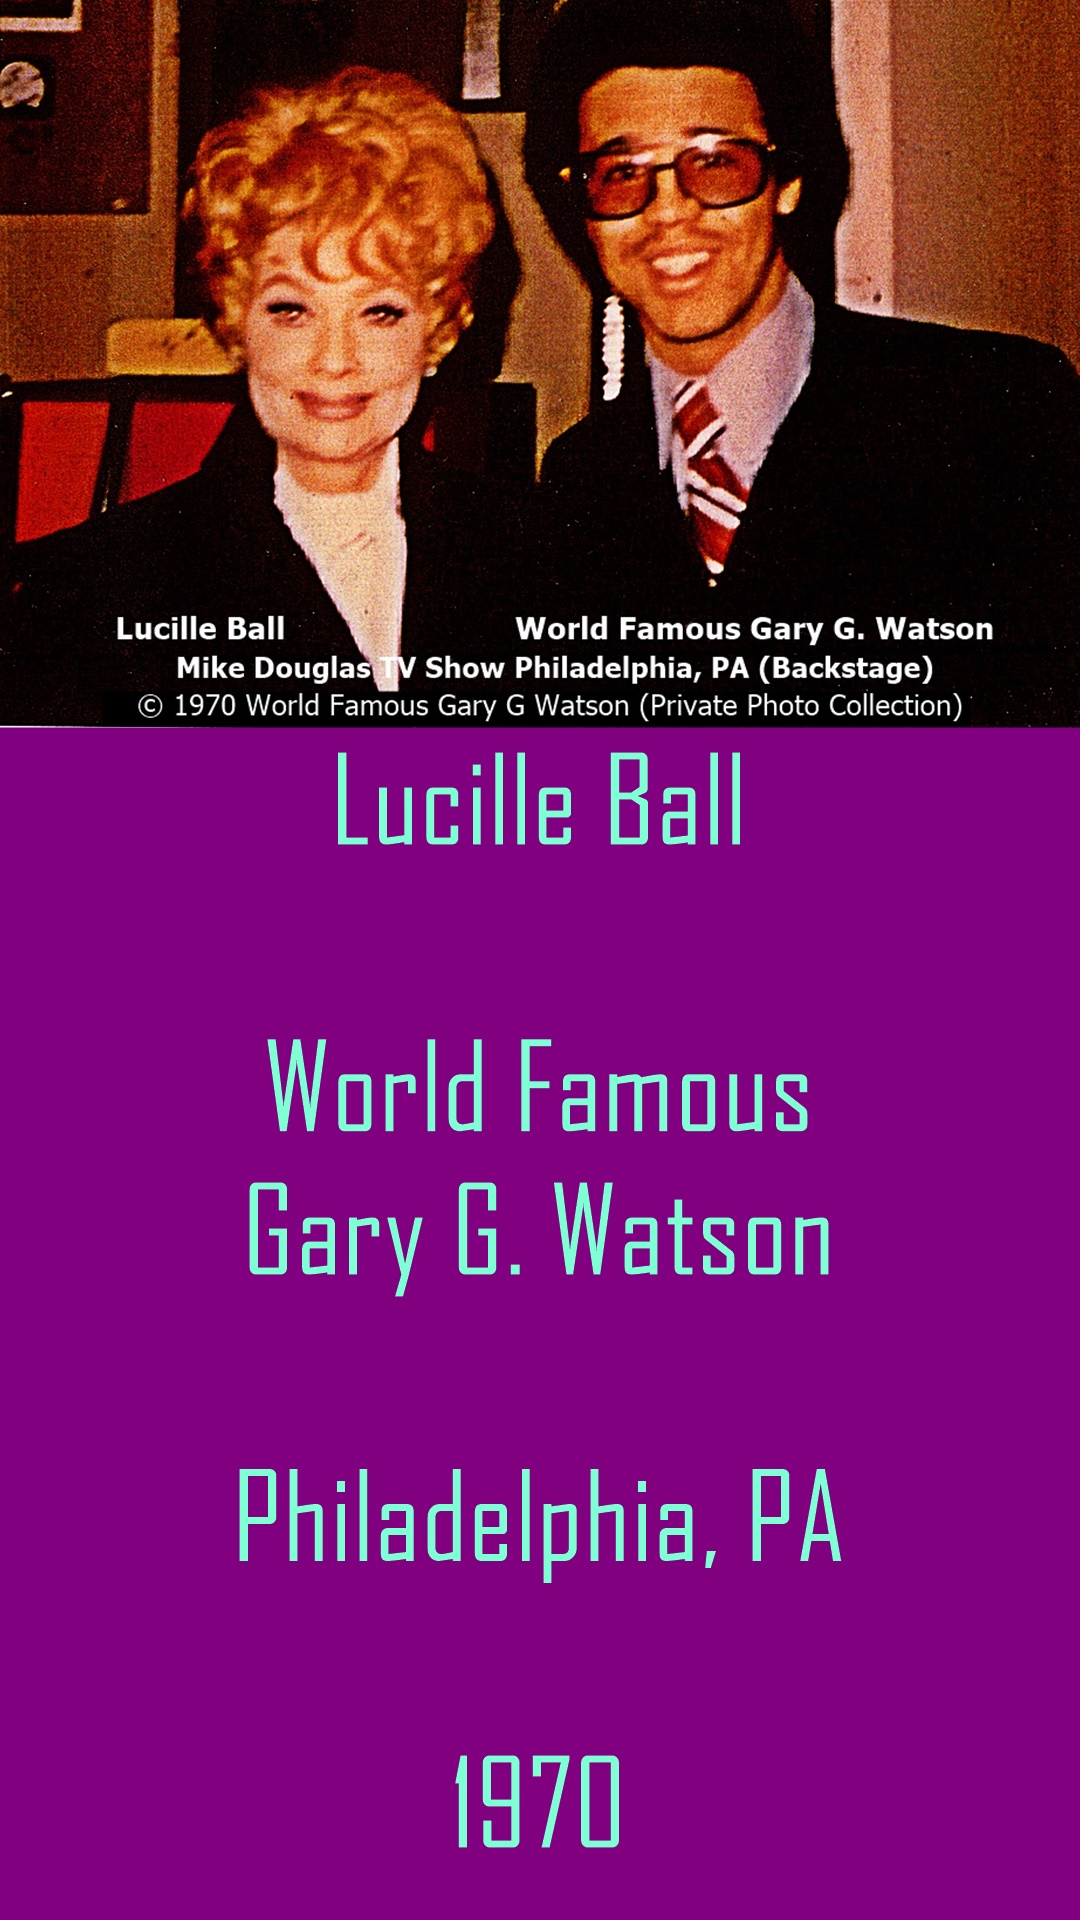 Lucille Ball and Gary G Watson